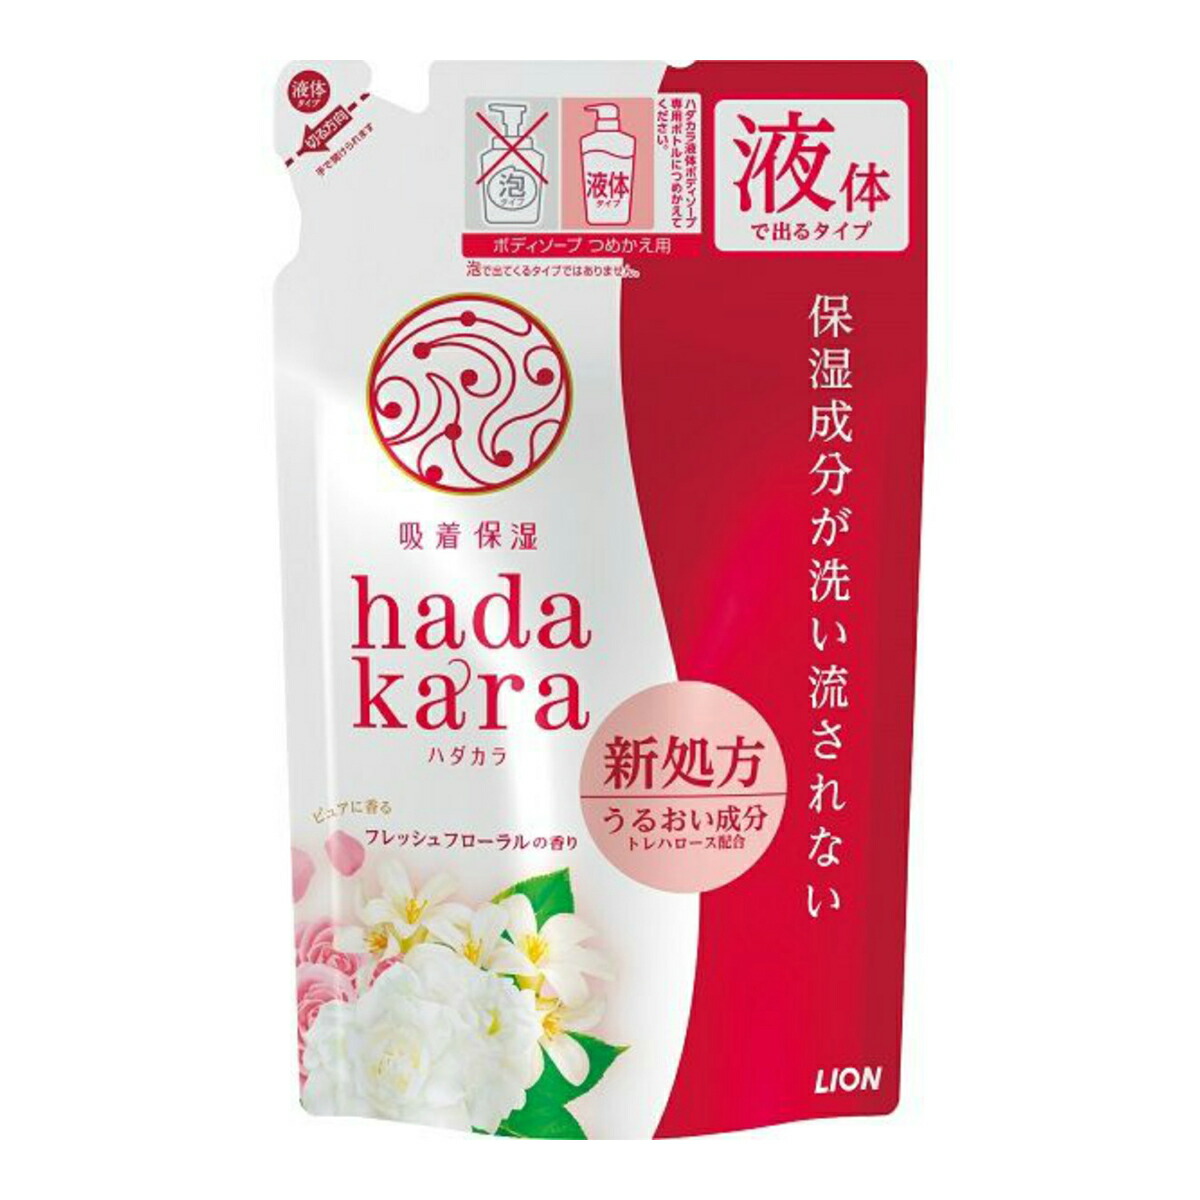 LION hadakara ボディソープ フレッシュフローラルの香り つめかえ用 360ml×1個 ハダカラ ボディソープの商品画像